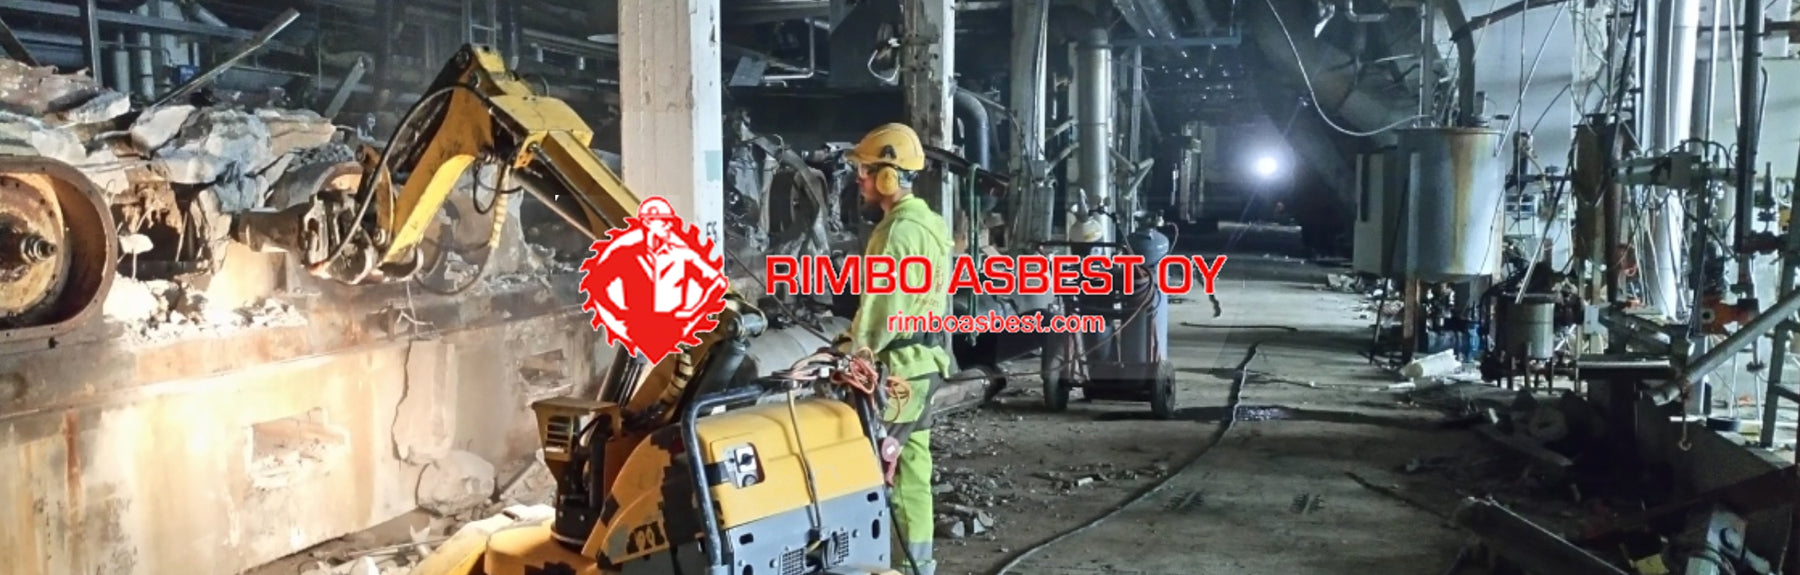 Rimbo Asbest Oy luottaa EIBENSTOCK timanttityökoneisiin ja Carbodiam timanttityökaluihin!